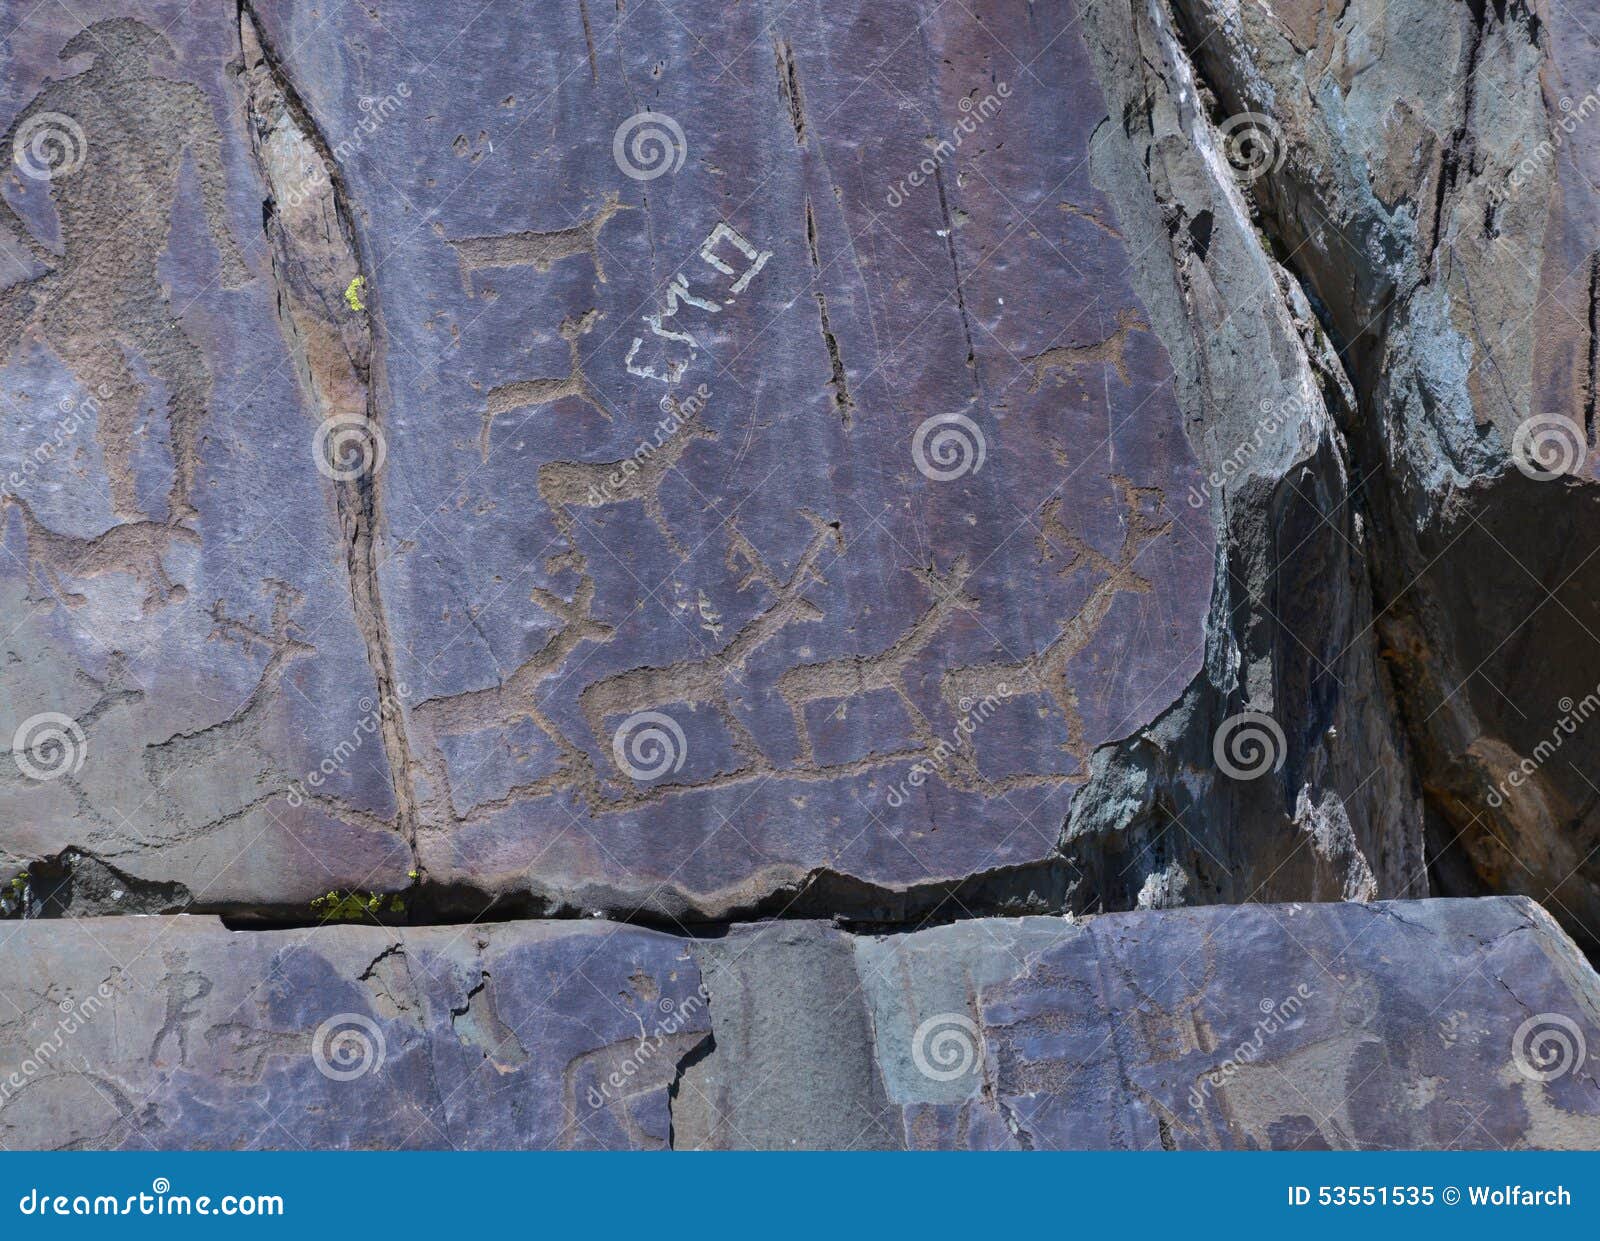 petroglyphs of kalbak-tash in altai, siberia